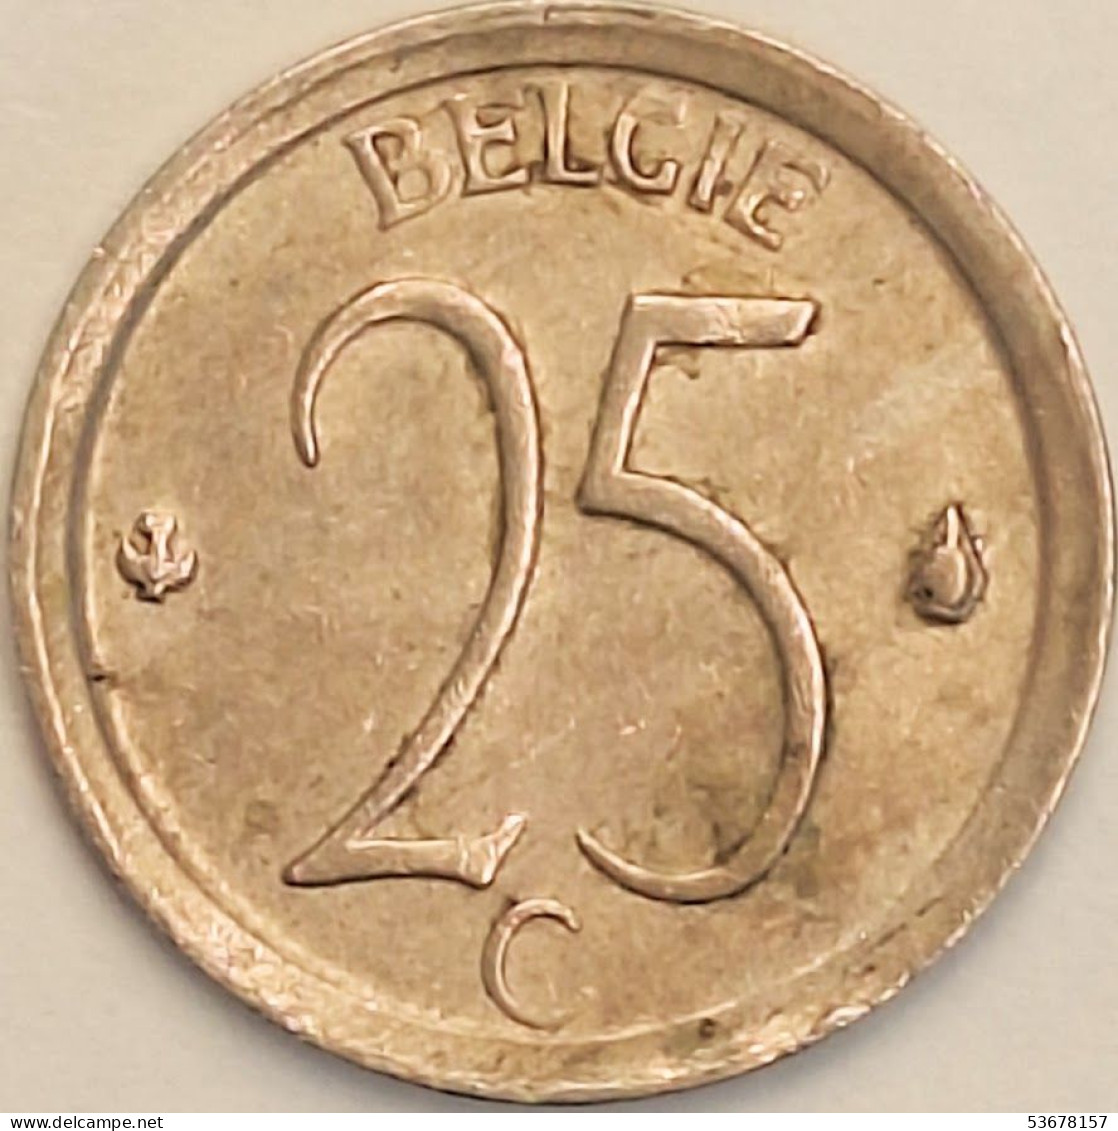 Belgium - 25 Centimes 1969, KM# 154.1 (#3085) - 25 Cent